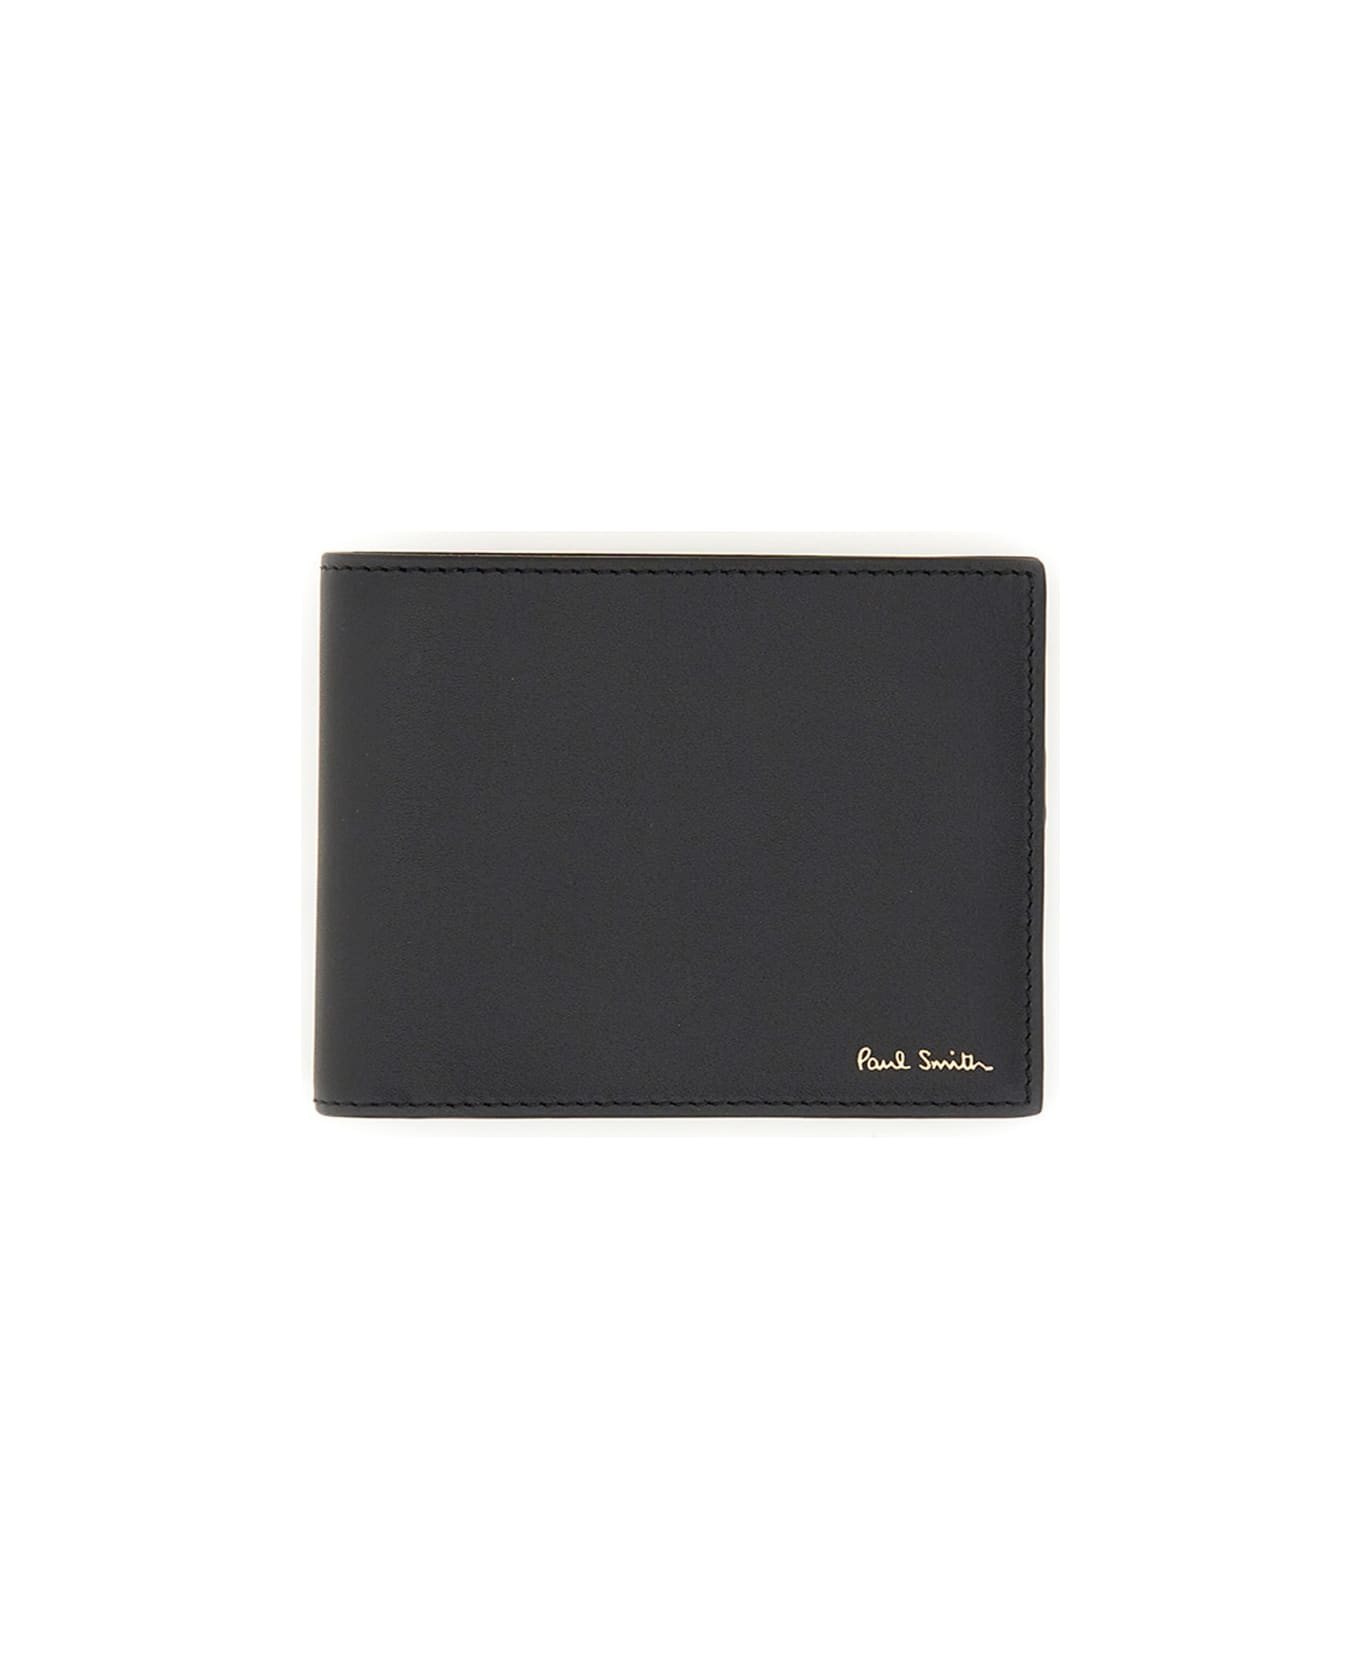 Paul Smith Bi-fold Leather Wallet - BLACK